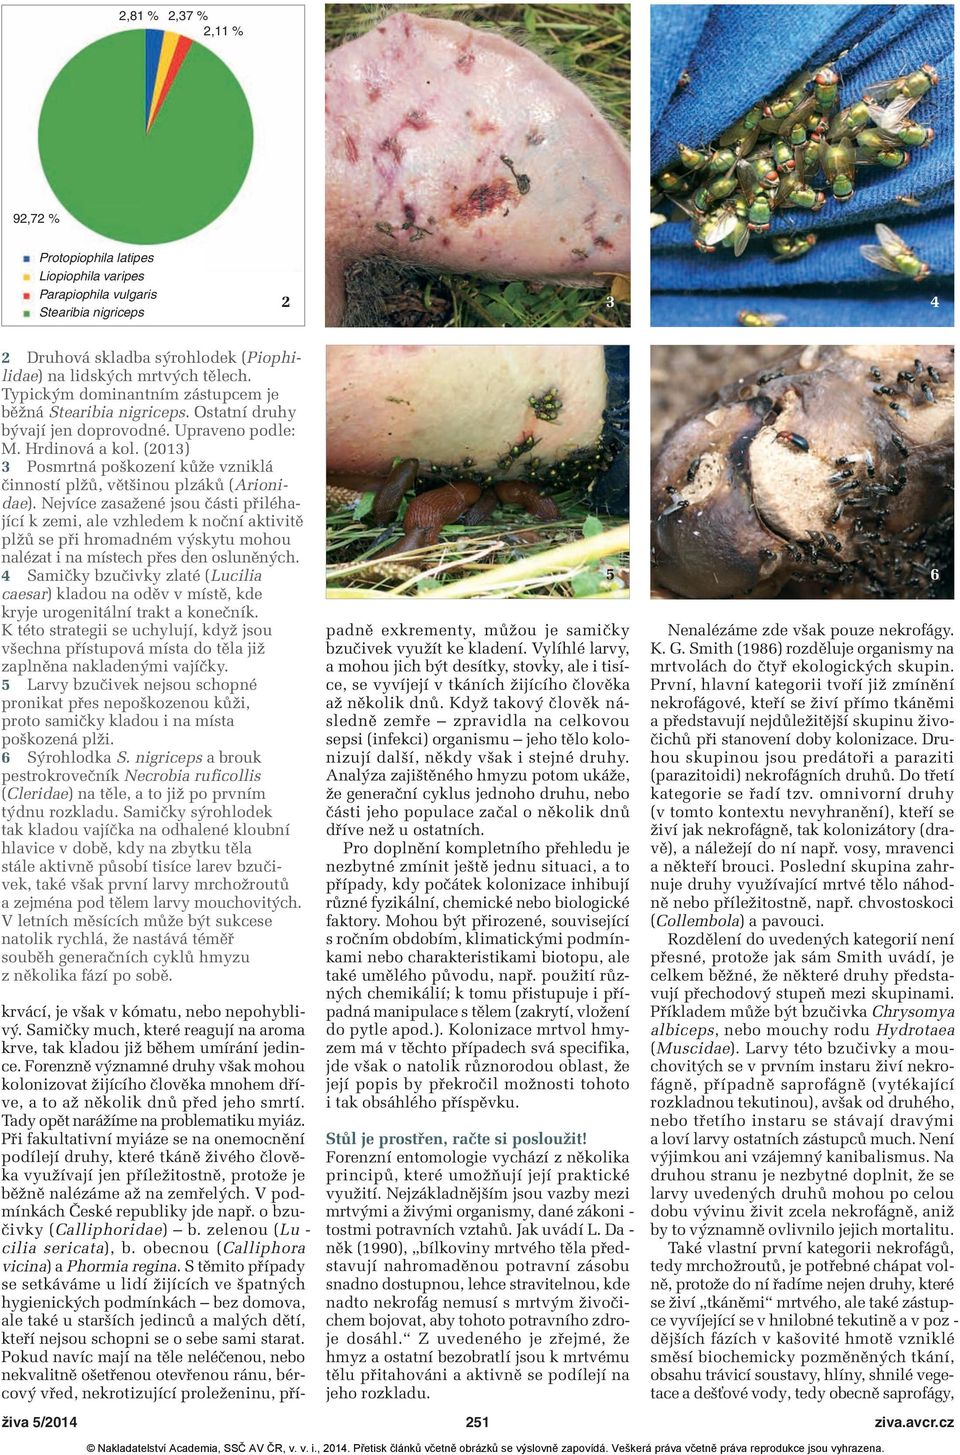 (2013) 3 Posmrtná poškození kůže vzniklá činností plžů, většinou plzáků (Arionidae).